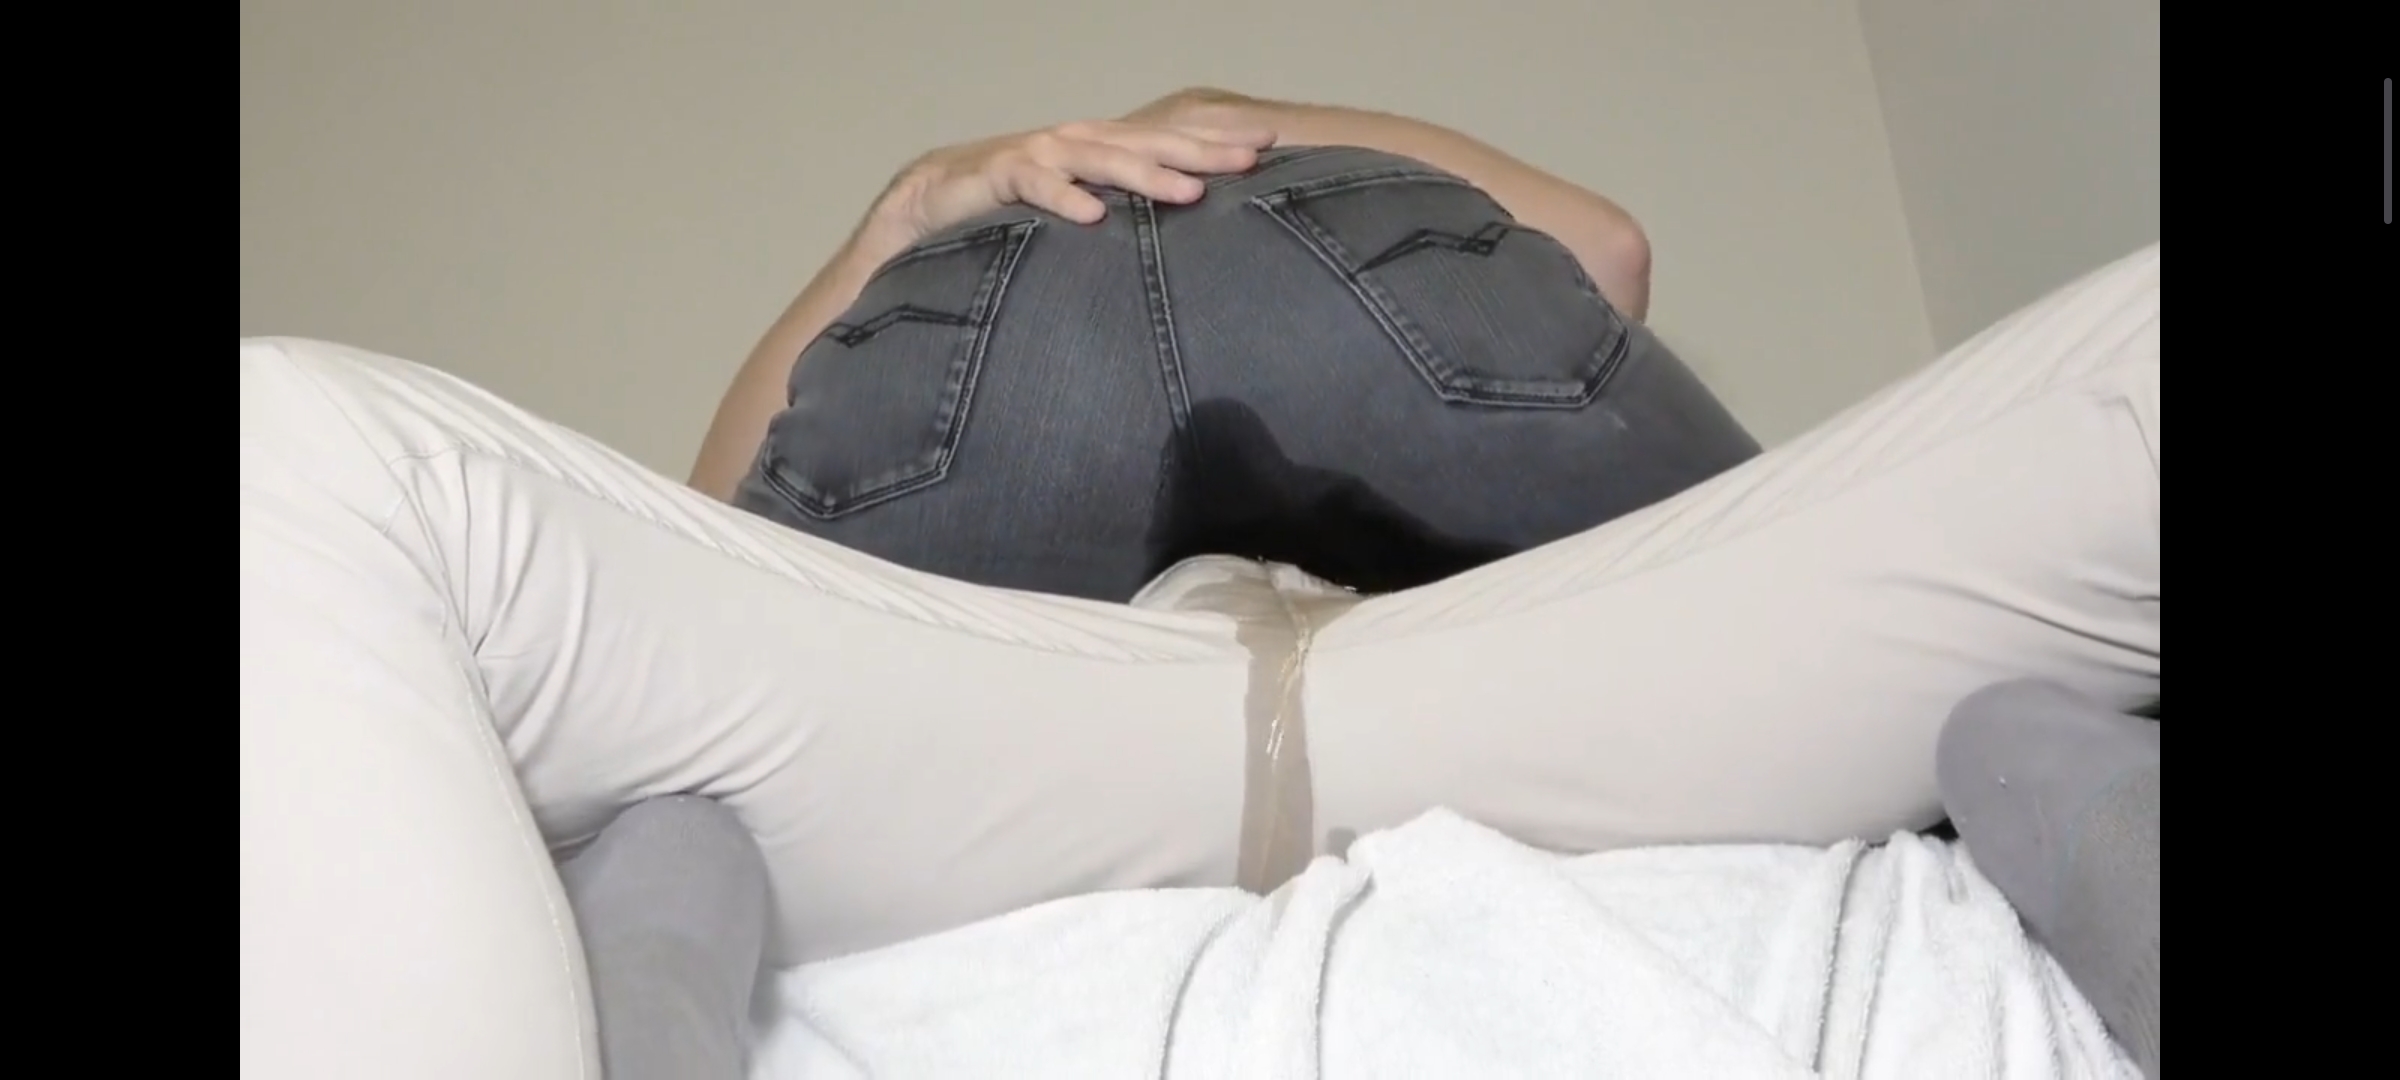 Girlfriend pees on Boyfriend's Lap in Jeans